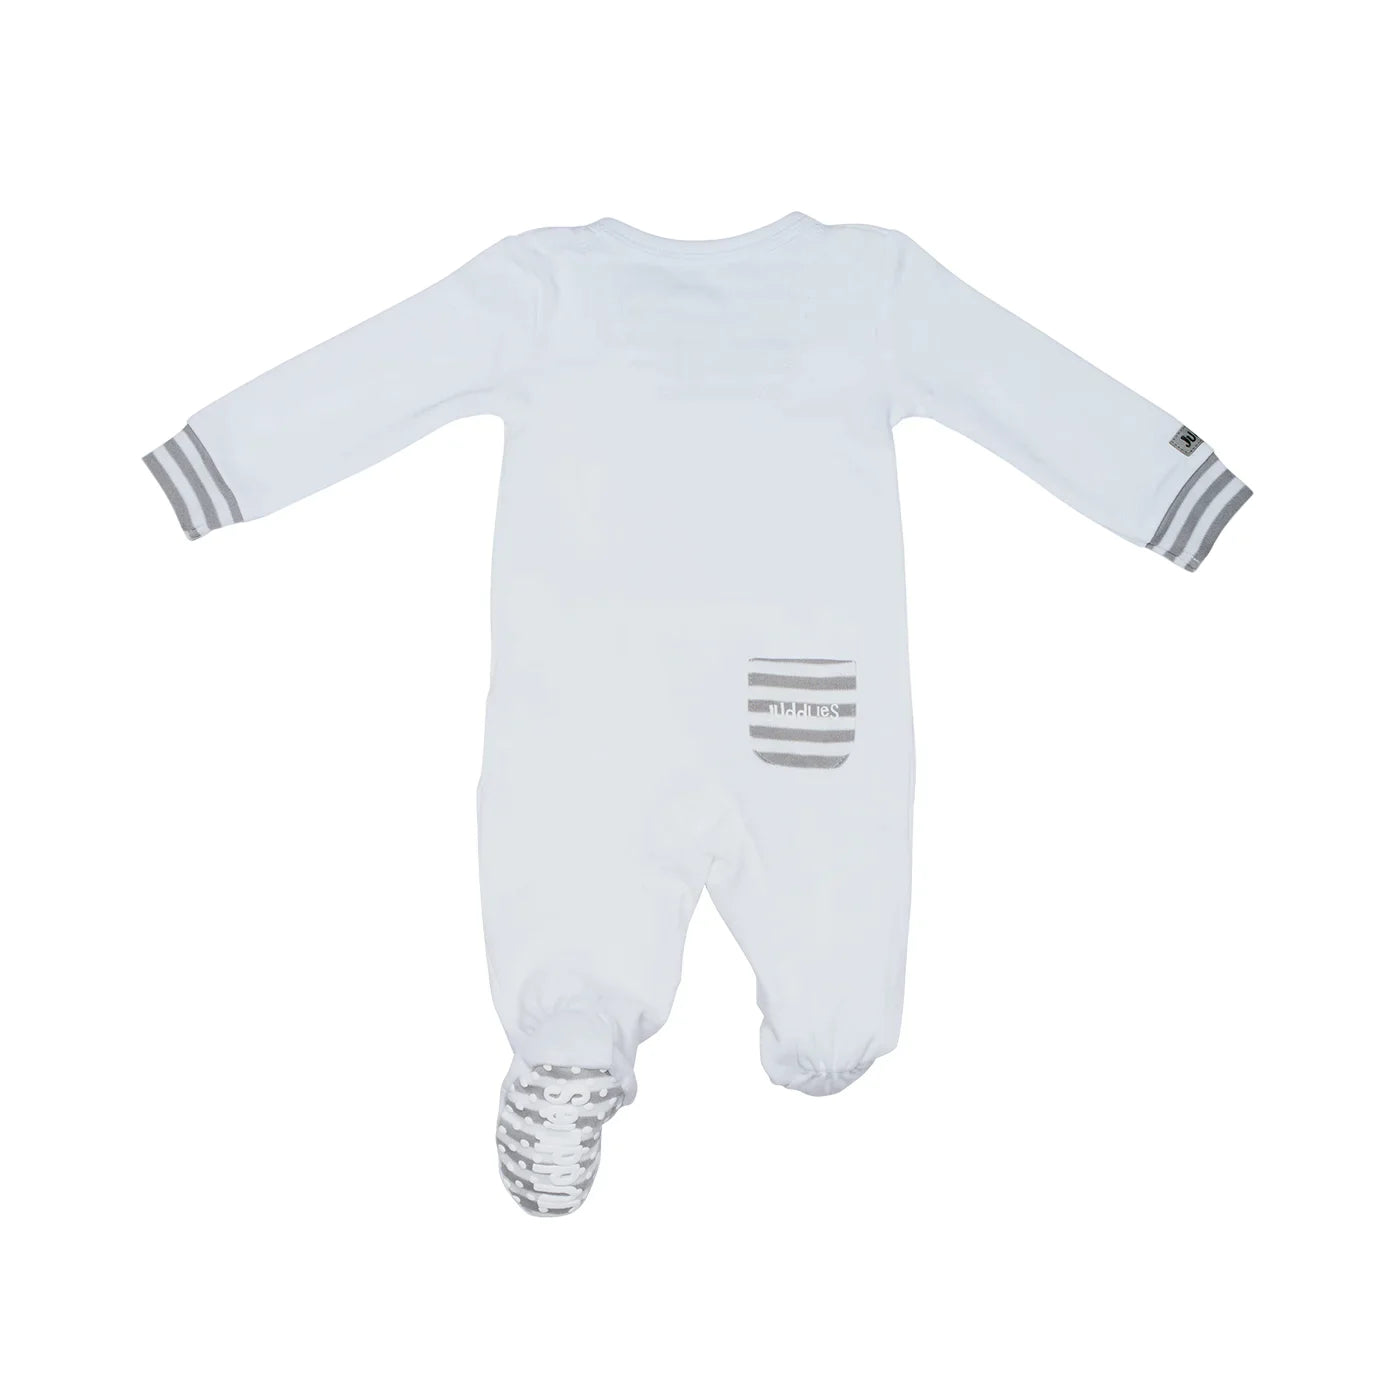 Dormeuse à pieds en coton biologique pour bébé avec fermeture éclair bidirectionnelle : Blanc